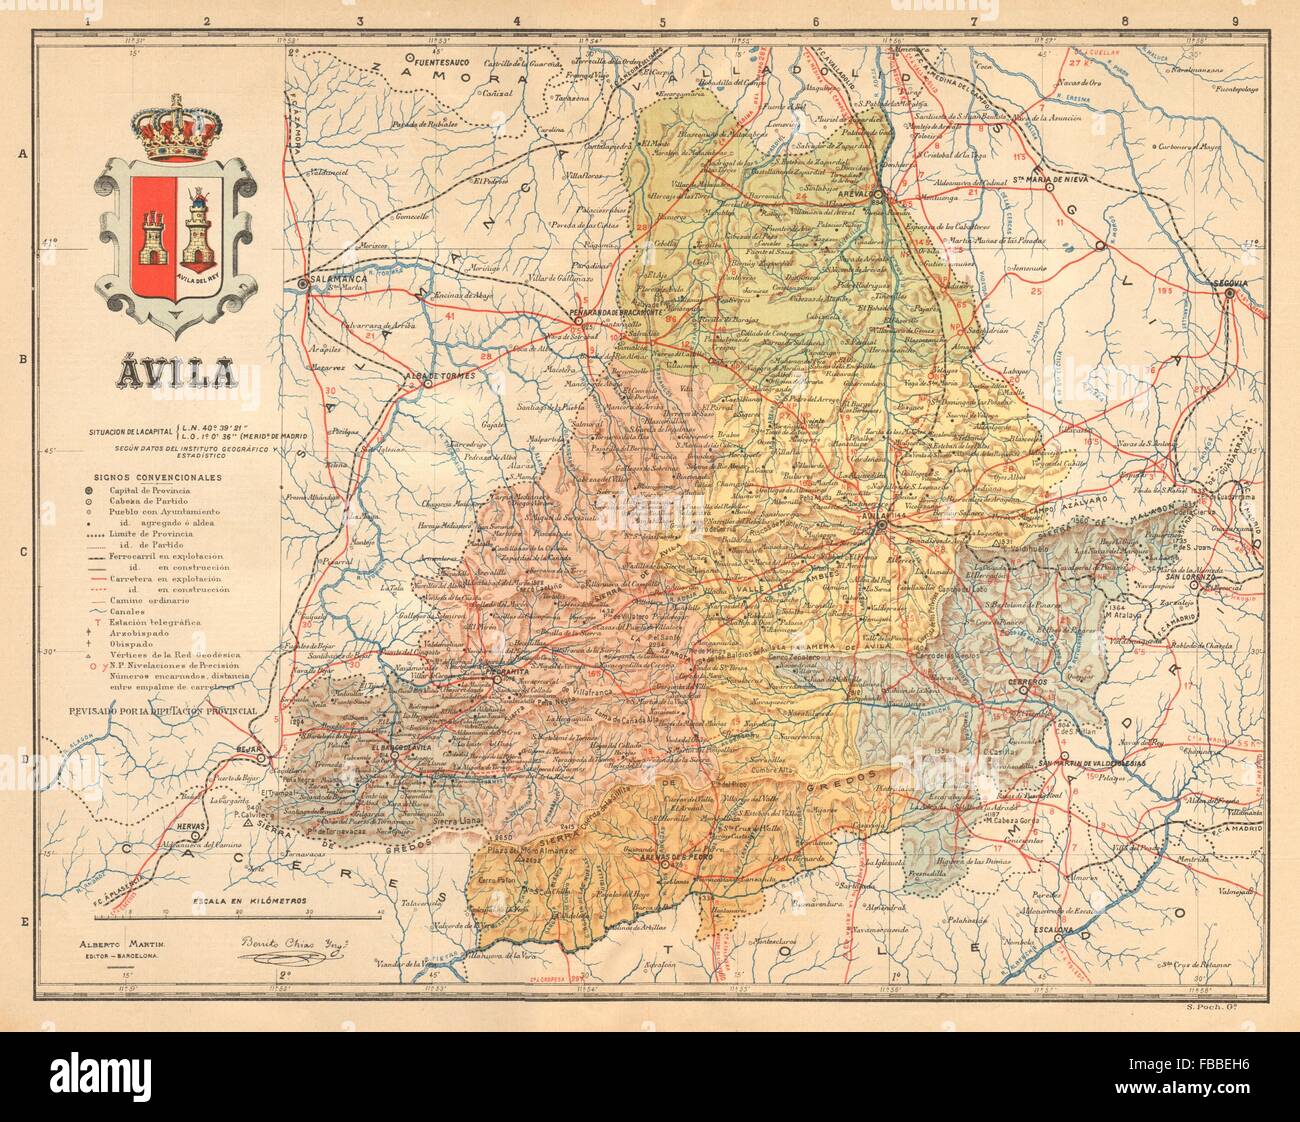 ÁVILA Avila. Castilla y León. Mapa antiguo de la provincia. ALBERTO MARTIN c1911 Stock Photo